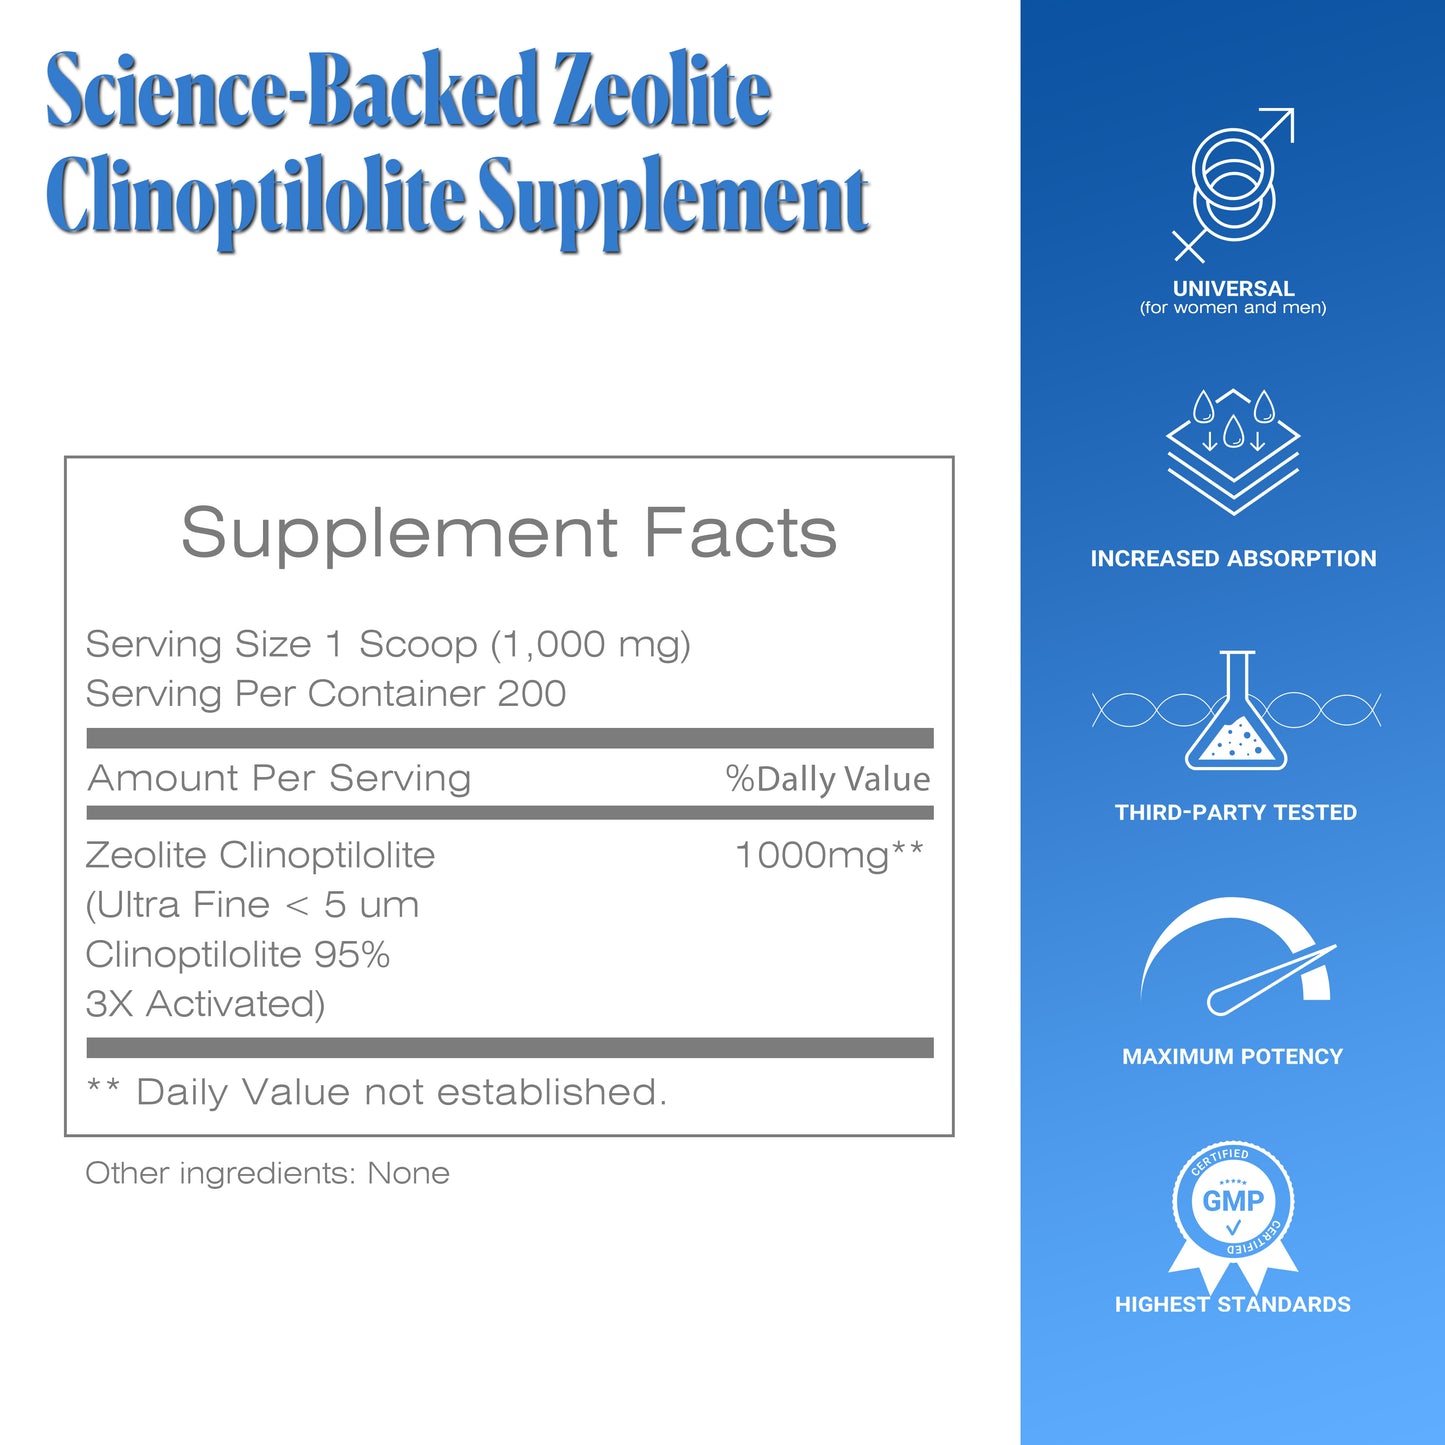 
                  
                    Zeolite Detox Sorbolit Powder - 200 Days Supply
                  
                